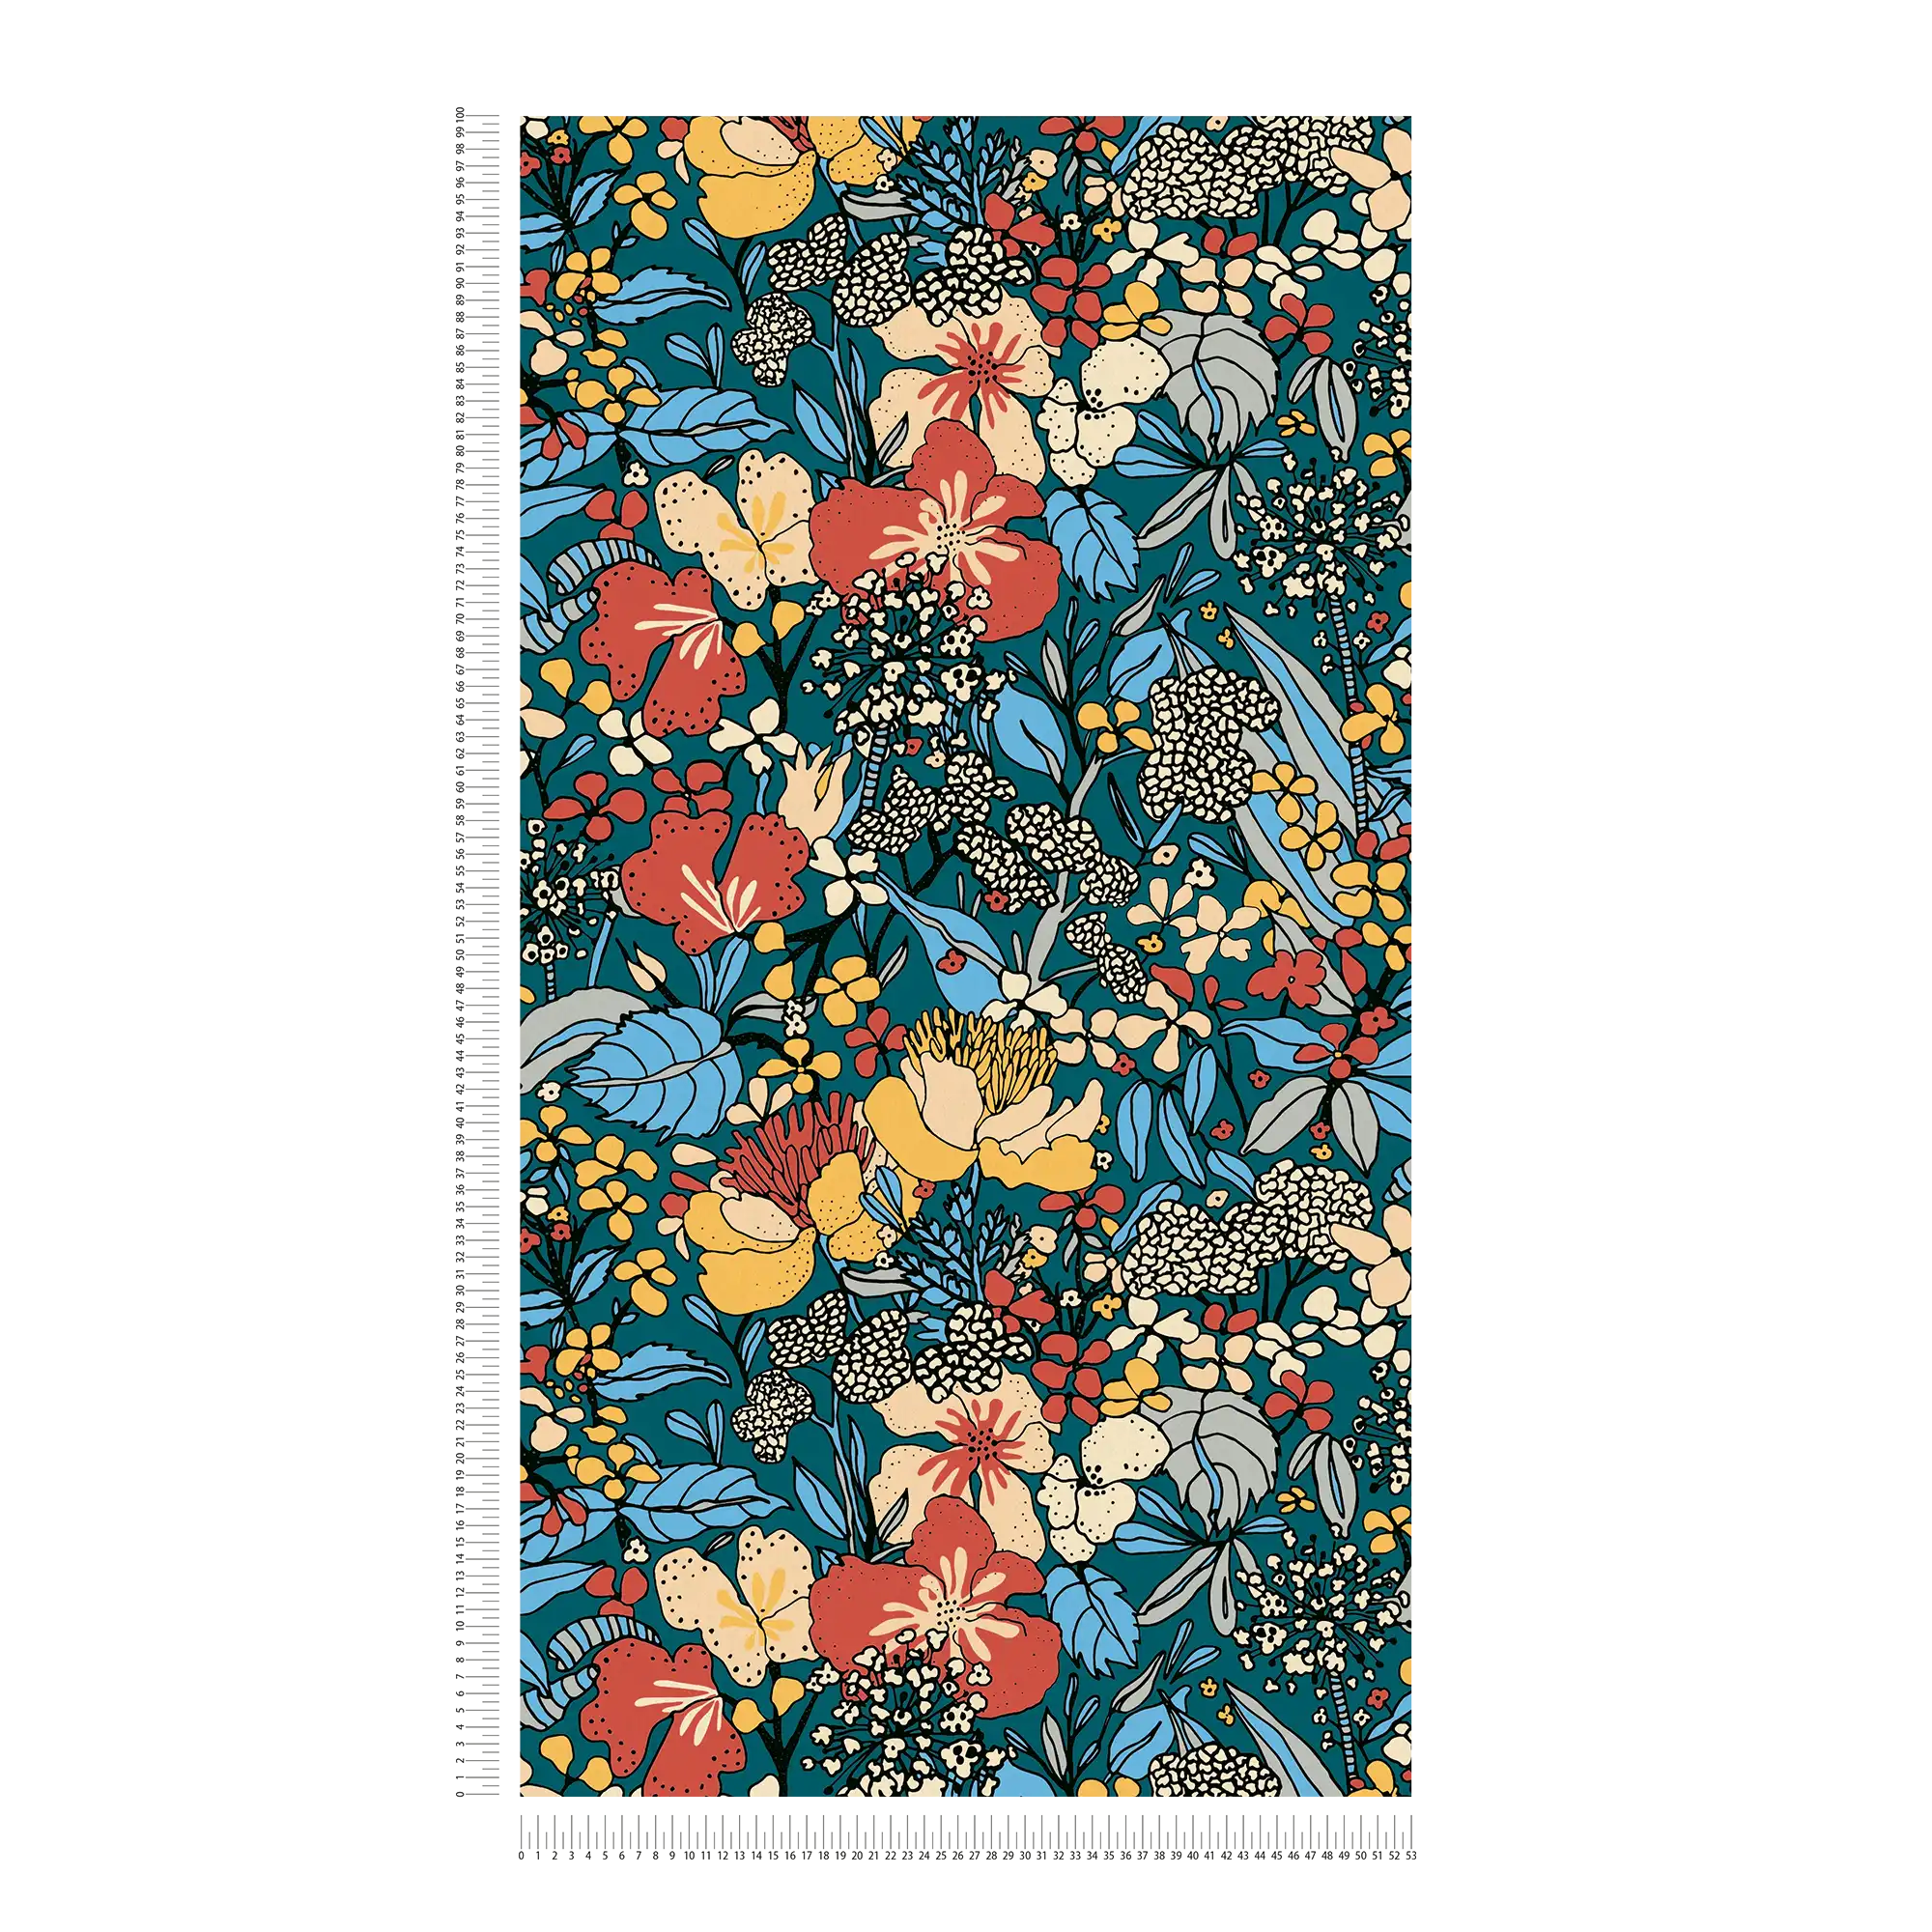             Papier peint intissé 70 rétro design fleuri - multicolore, bleu, orange
        